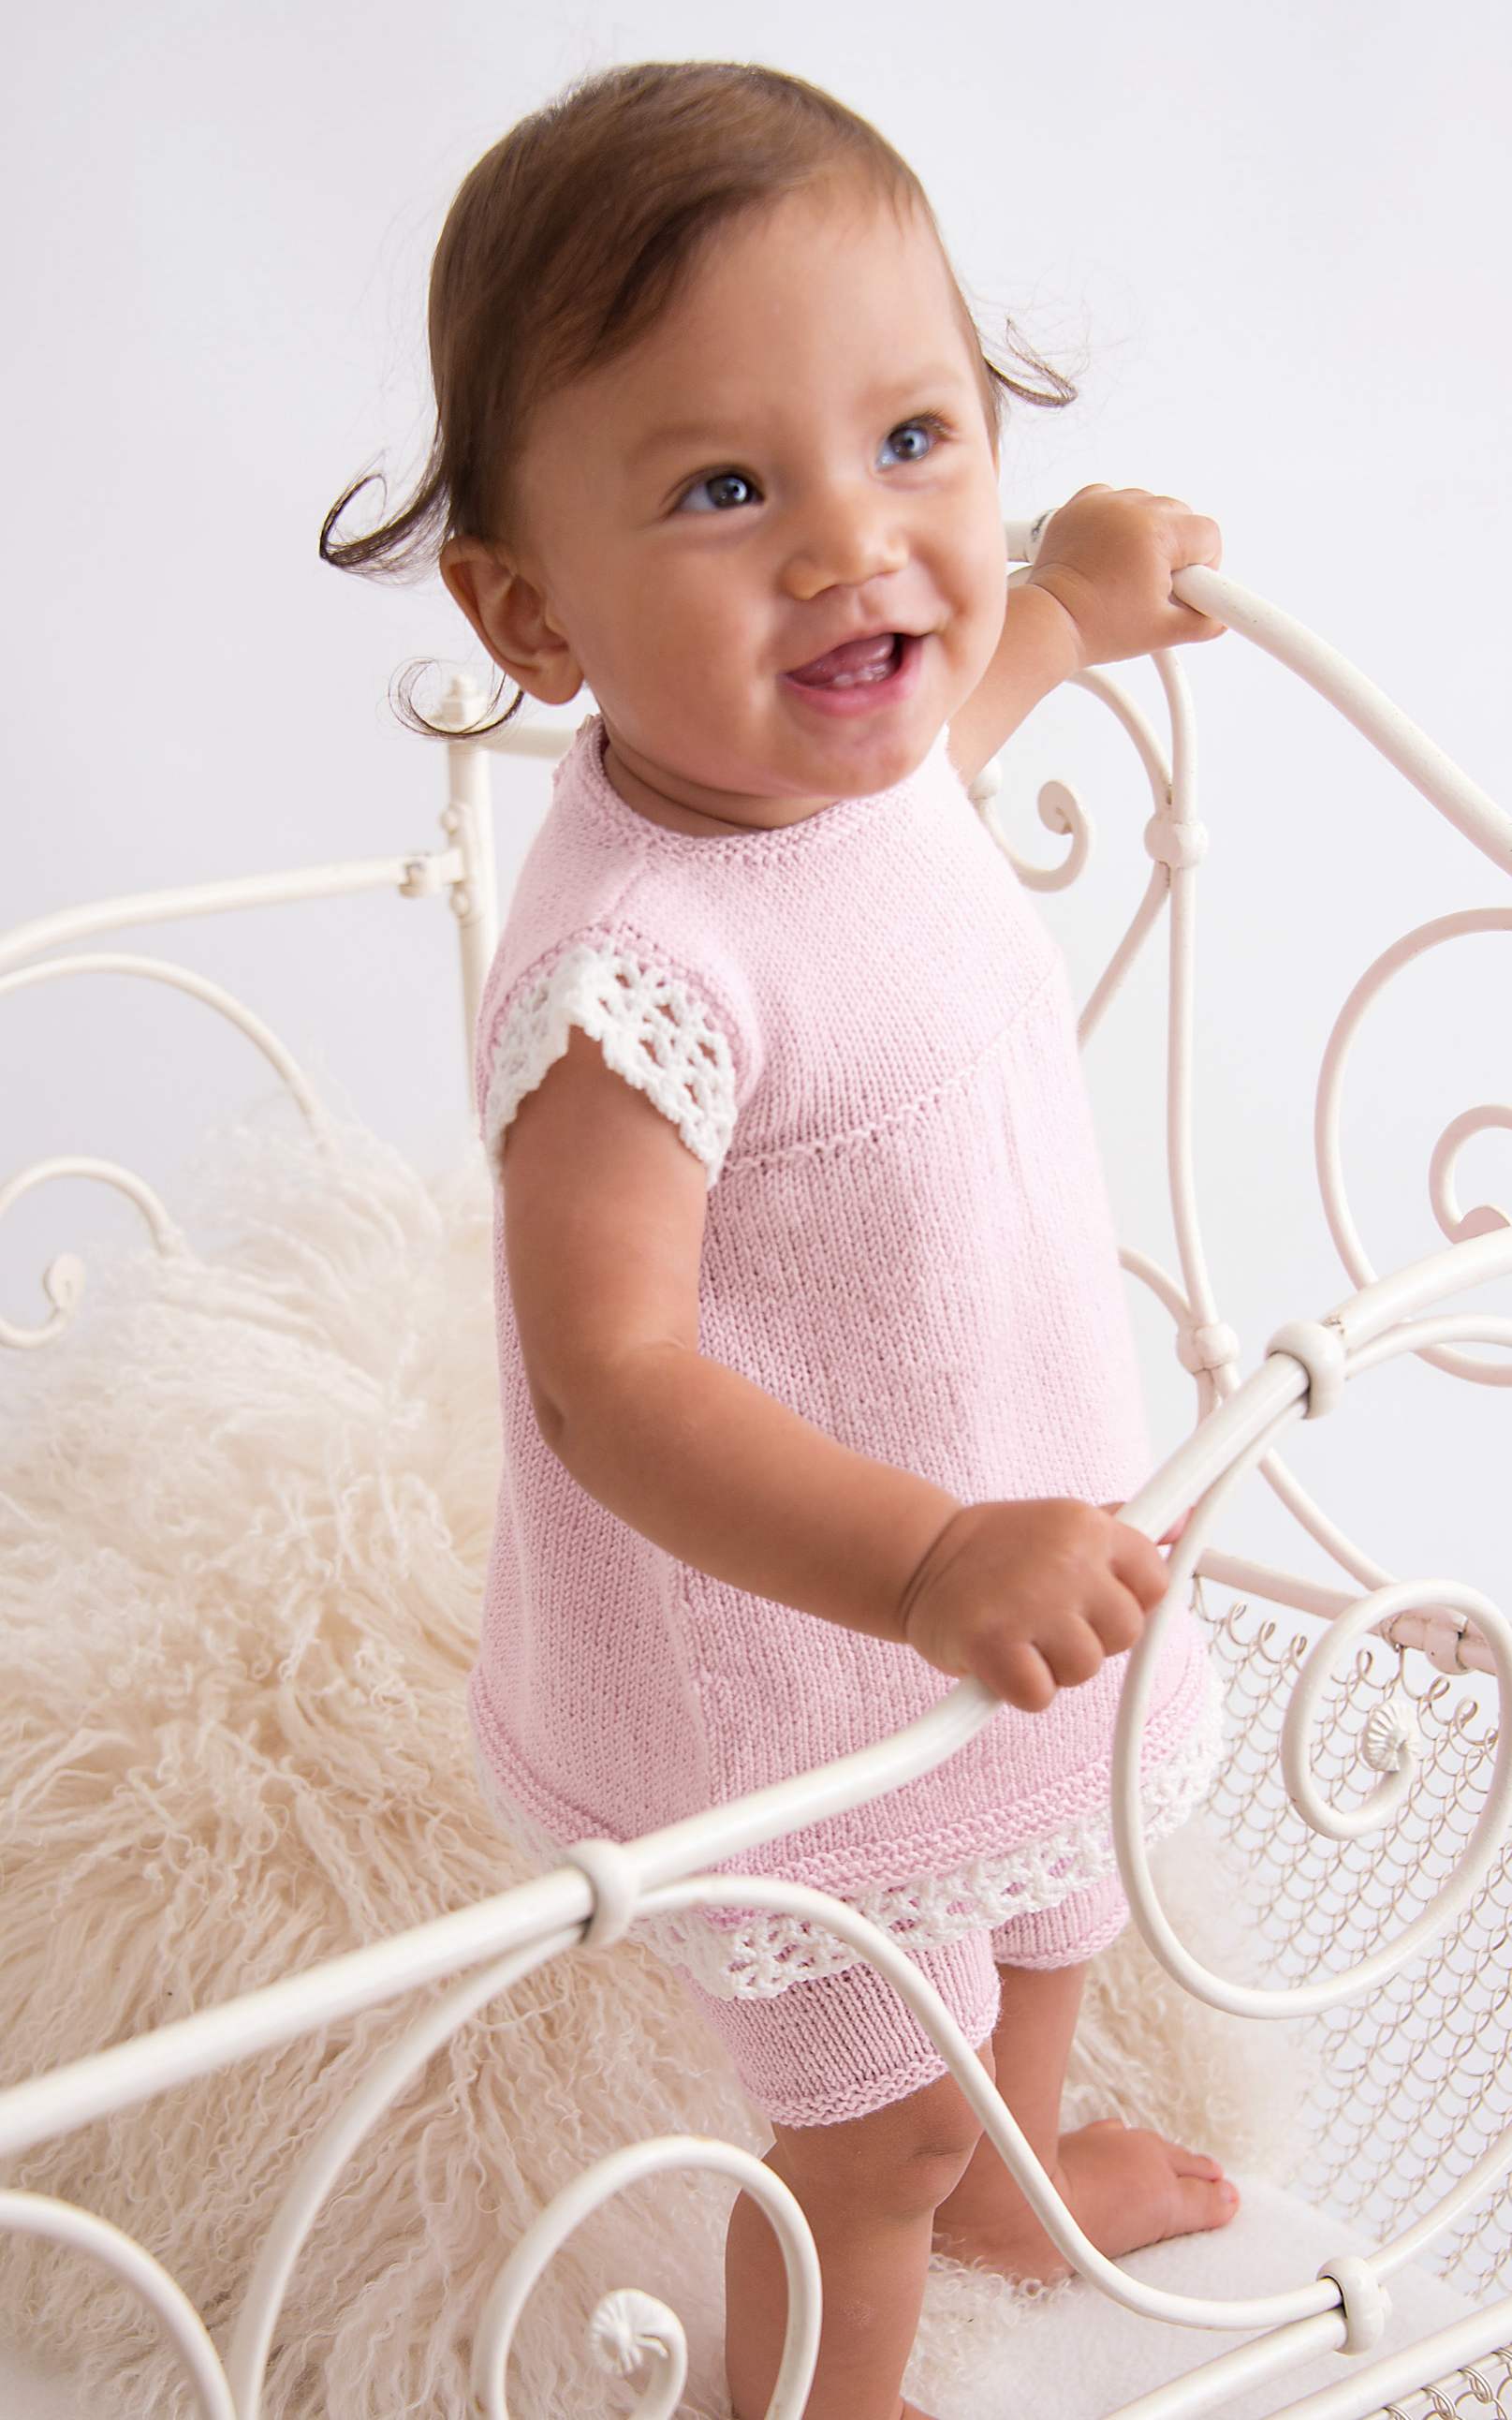 Baby Tunika und kurze Hose - Strickset von LANA GROSSA jetzt online kaufen bei OONIQUE